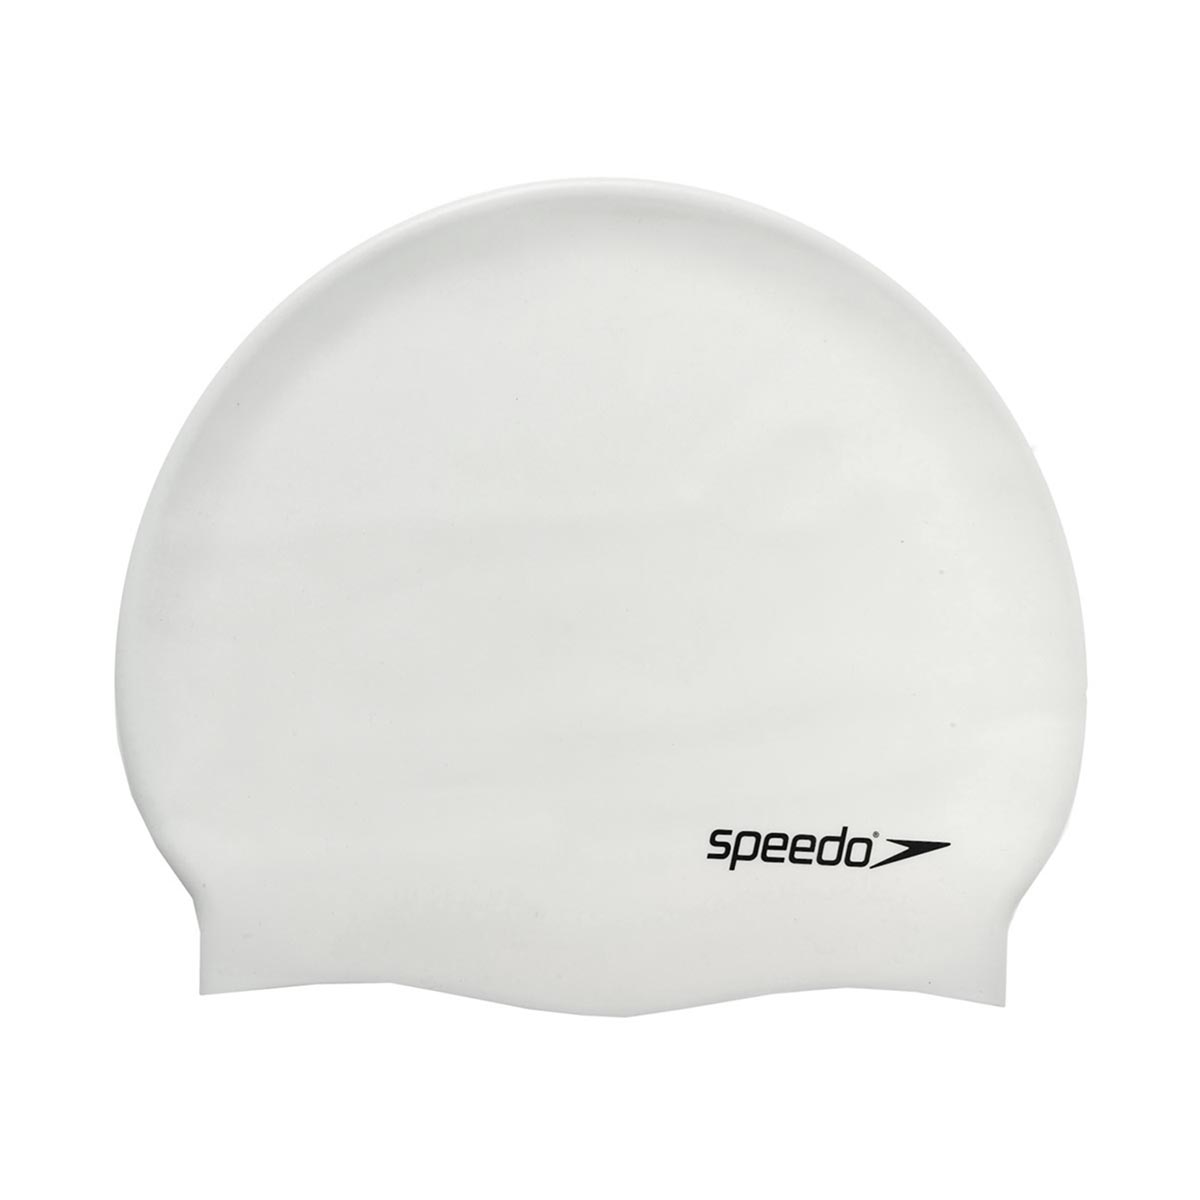 SPEEDO - PLAIN FLAT SILICONE CAP